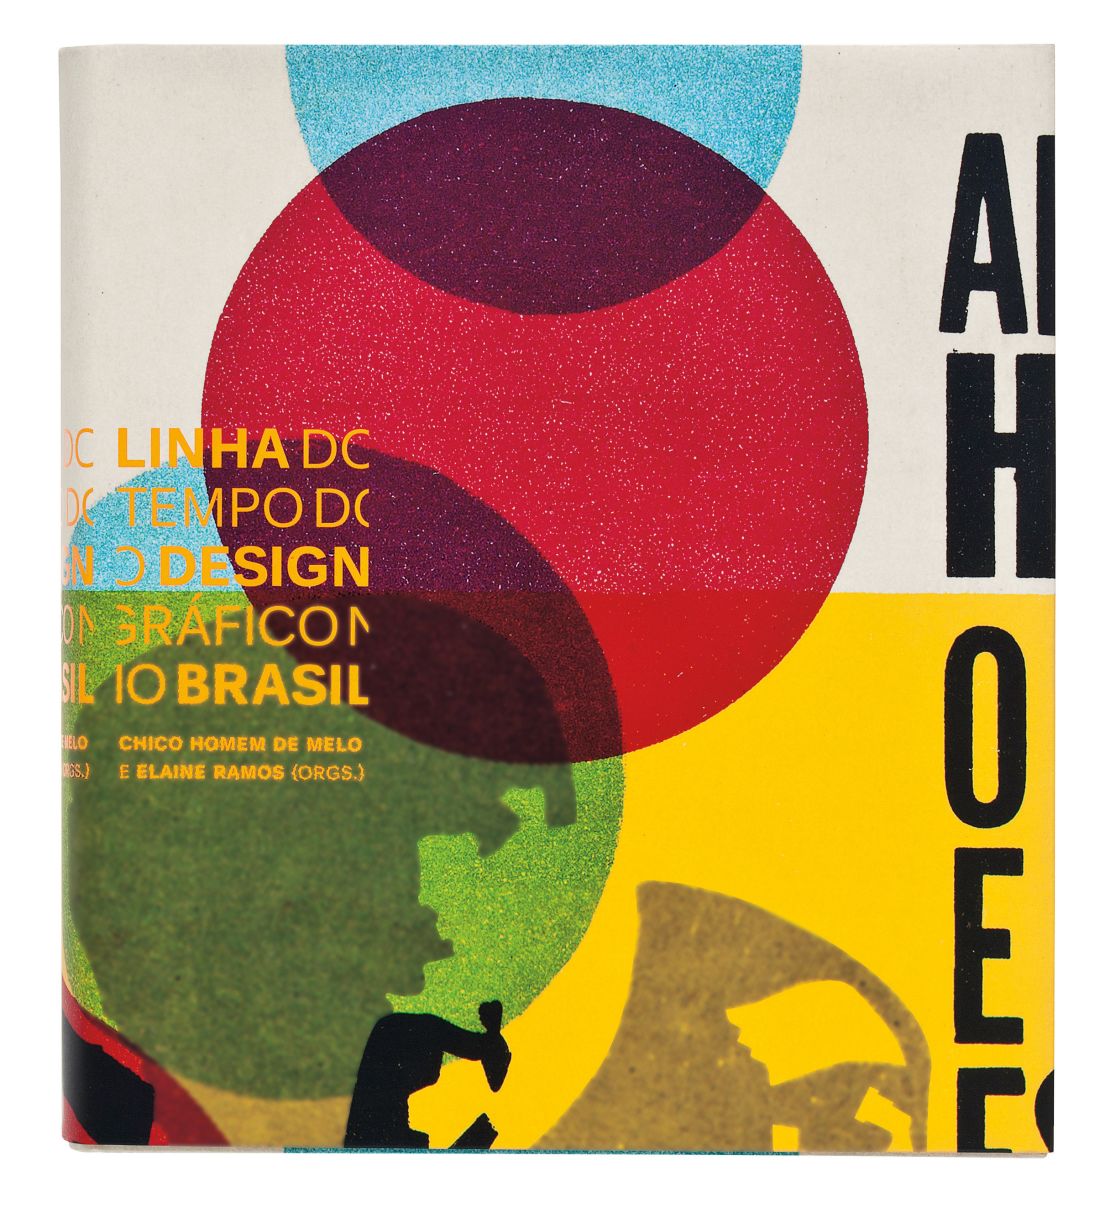 "Linha do tempo do design gráfico no Brasil" book design, 2012